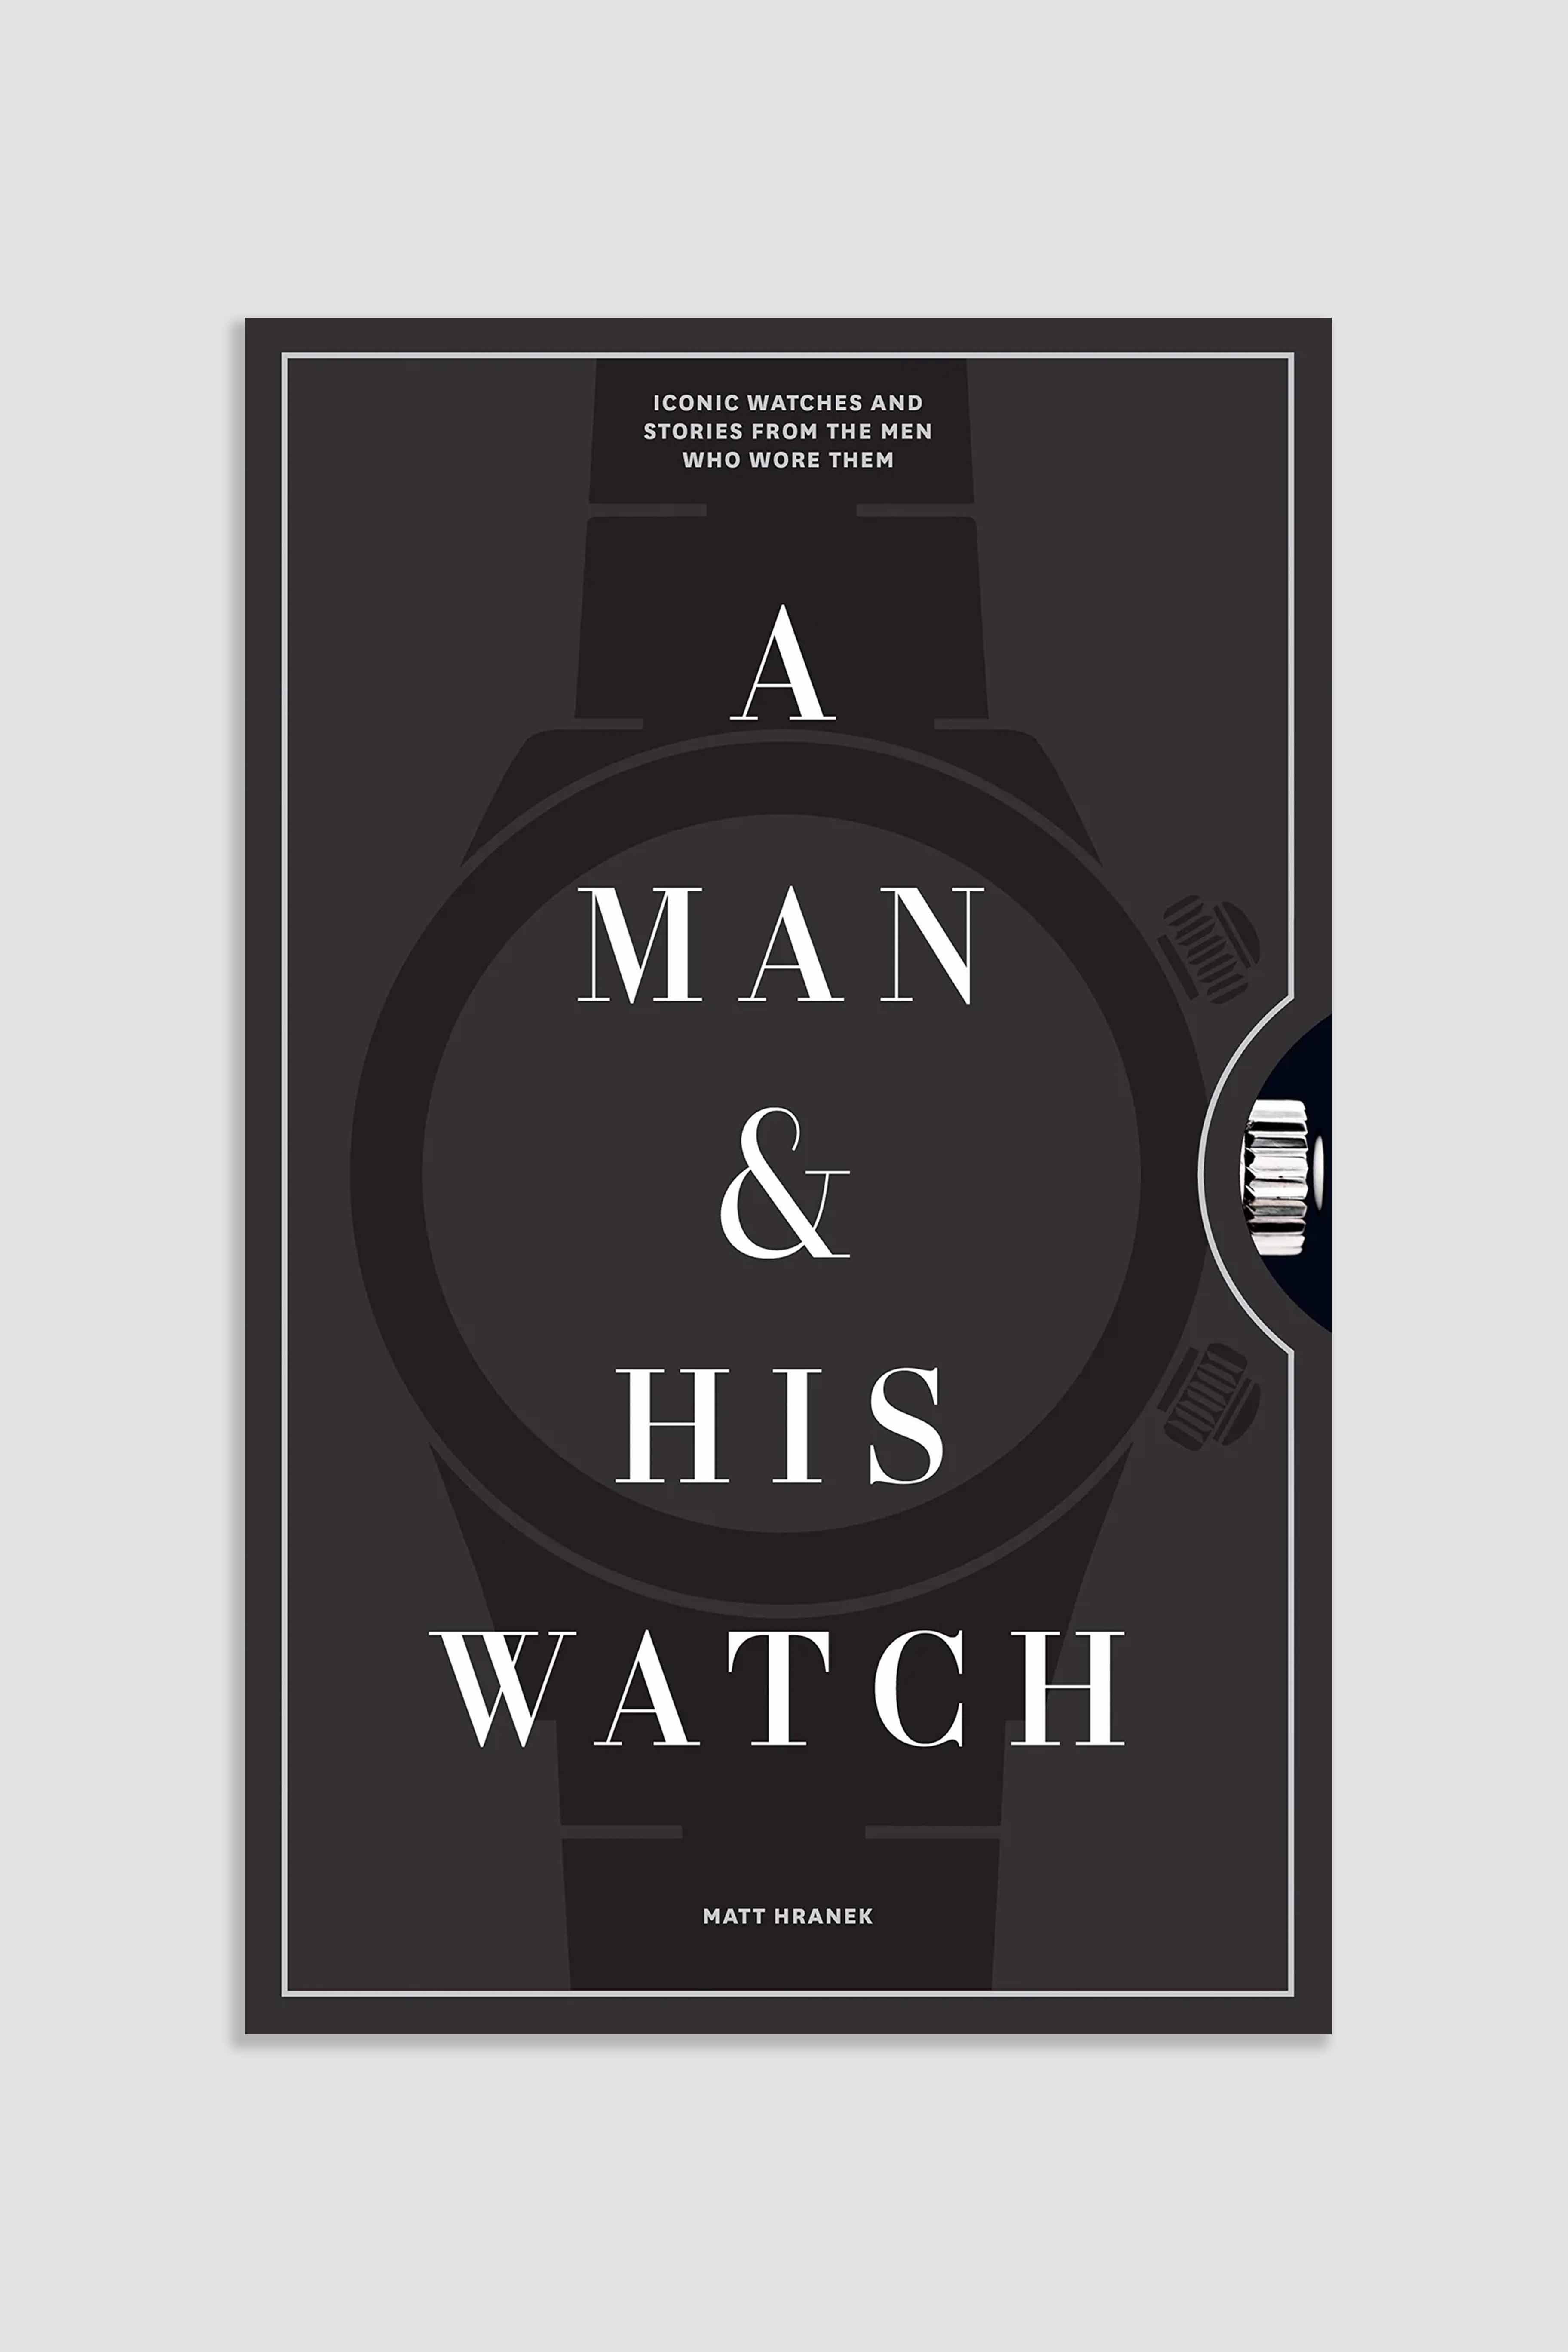 A Man & His Watch by Matt Hranek